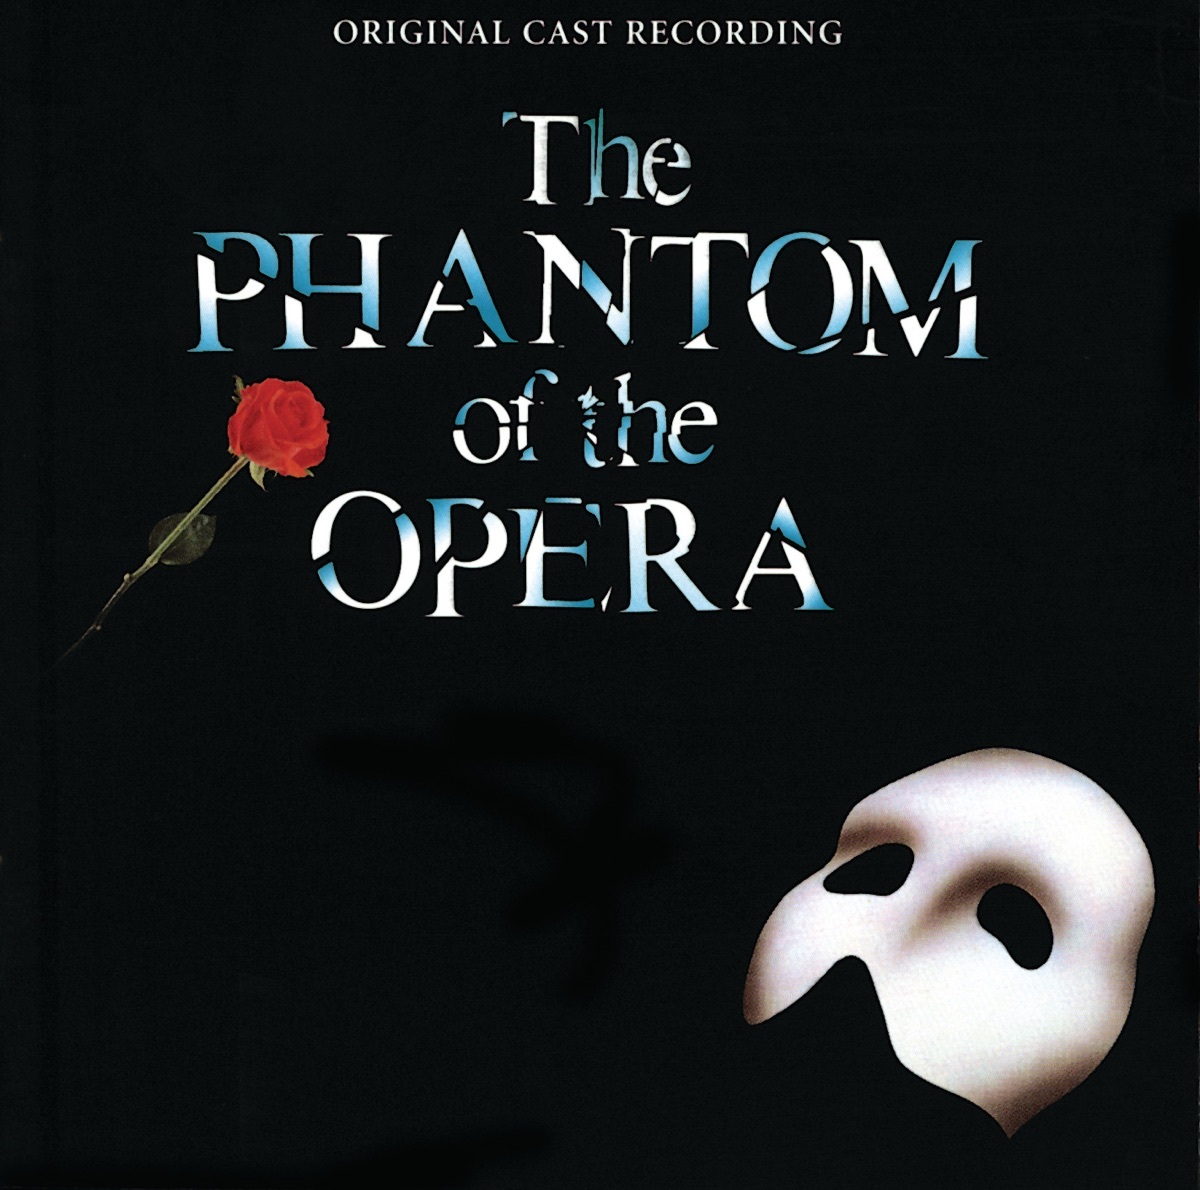 Phantom of the Opera cast recording